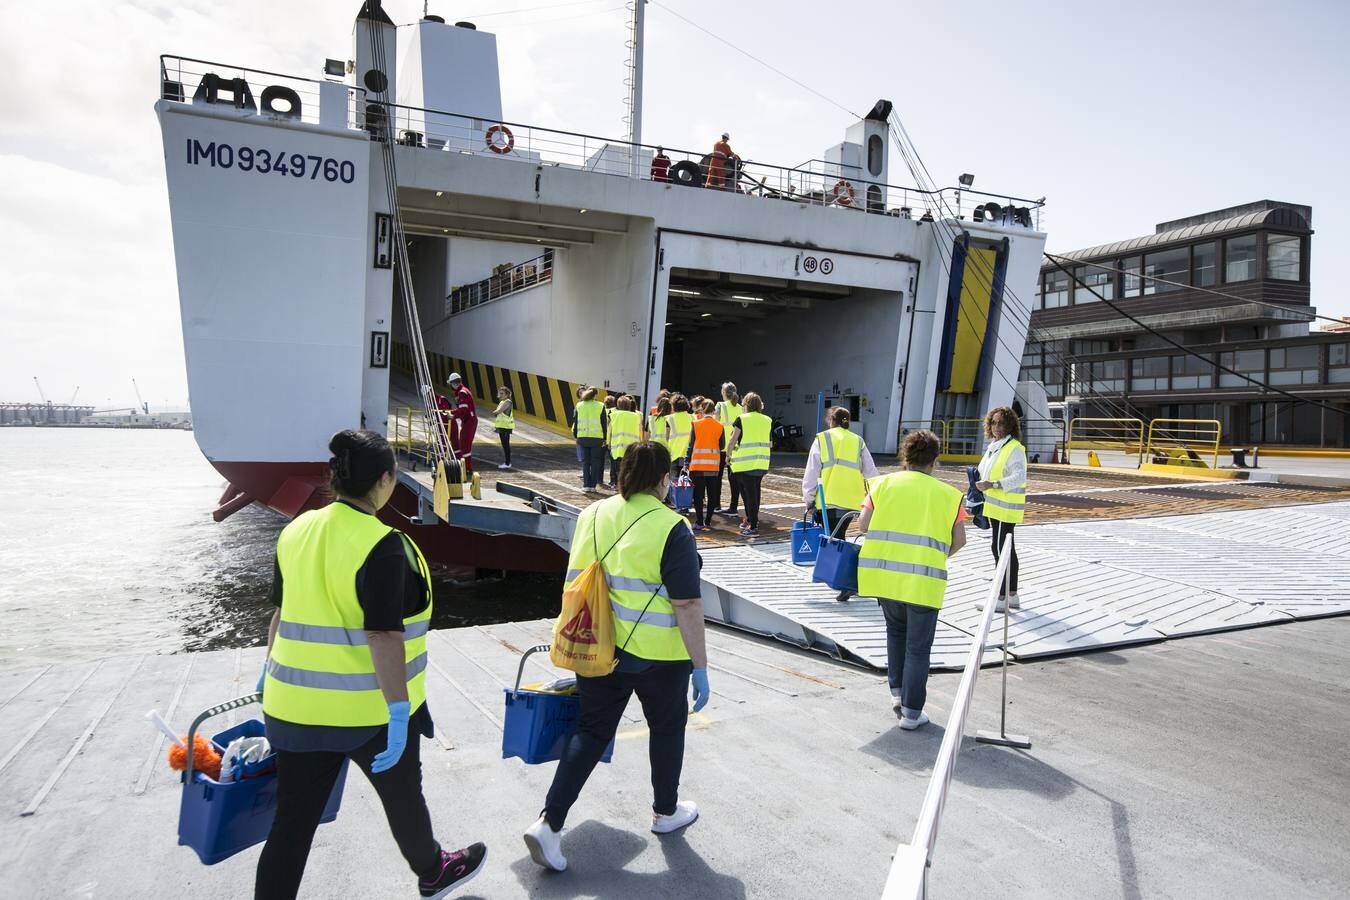 El barco 'Connemara' ha iniciado hoy su ruta de la localidad irlandesa de Cork a Santander, la primera conexión marítima entre Irlanda y España, con el objetivo de trasladar a 40.000 personas y 20.000 camiones al año cuando la línea esté consolidada.